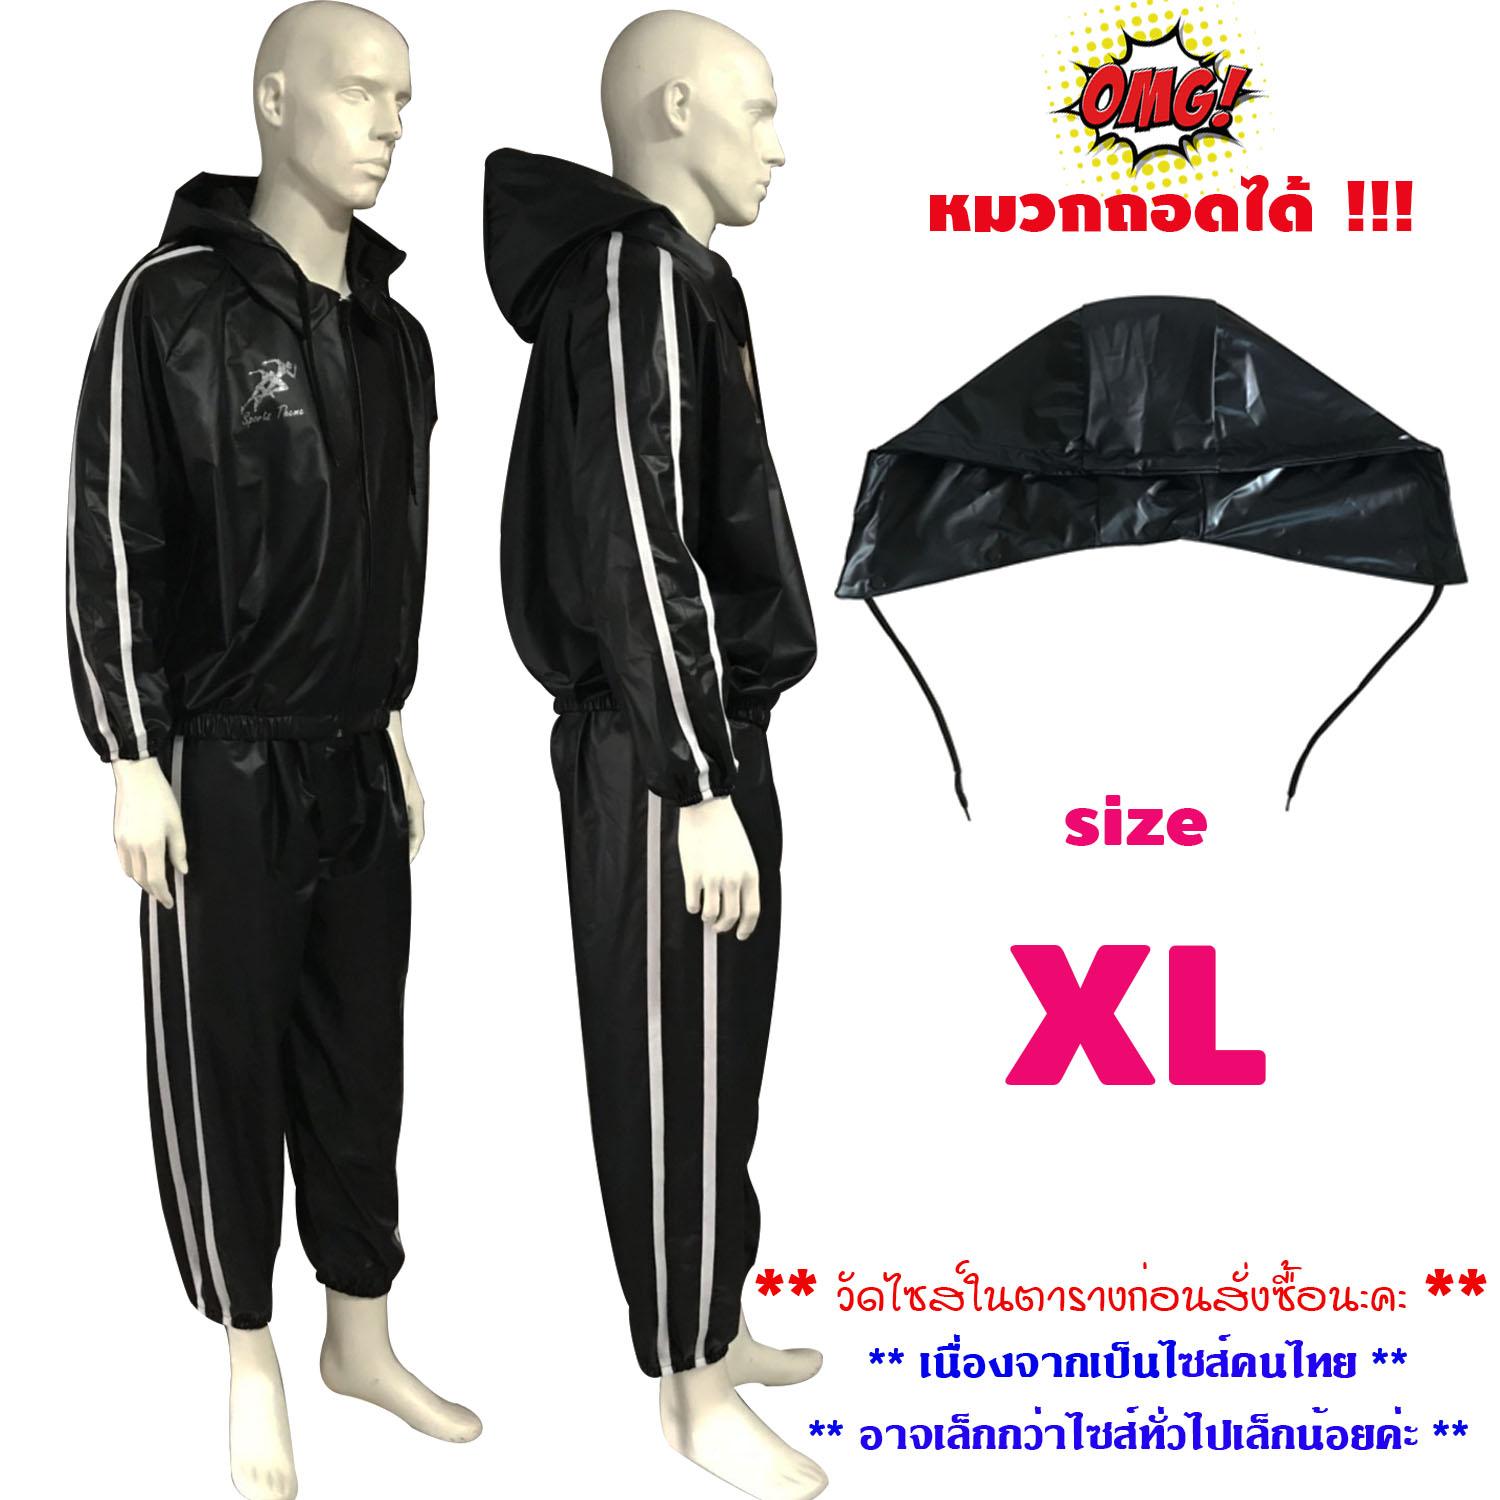 Sports Theme ชุดซาวน่า รุ่นใหม่ ล่าสุด ชุดกีฬา แฟชั่น มีซิปรูด เสื้อ+กางเกง+ฮู้ด ถอดได้ Sauna Suit ออกกำลังกาย รีดเหงื่อ ลดน้ำหนัก สีดำ แถบข้าง สีขาว